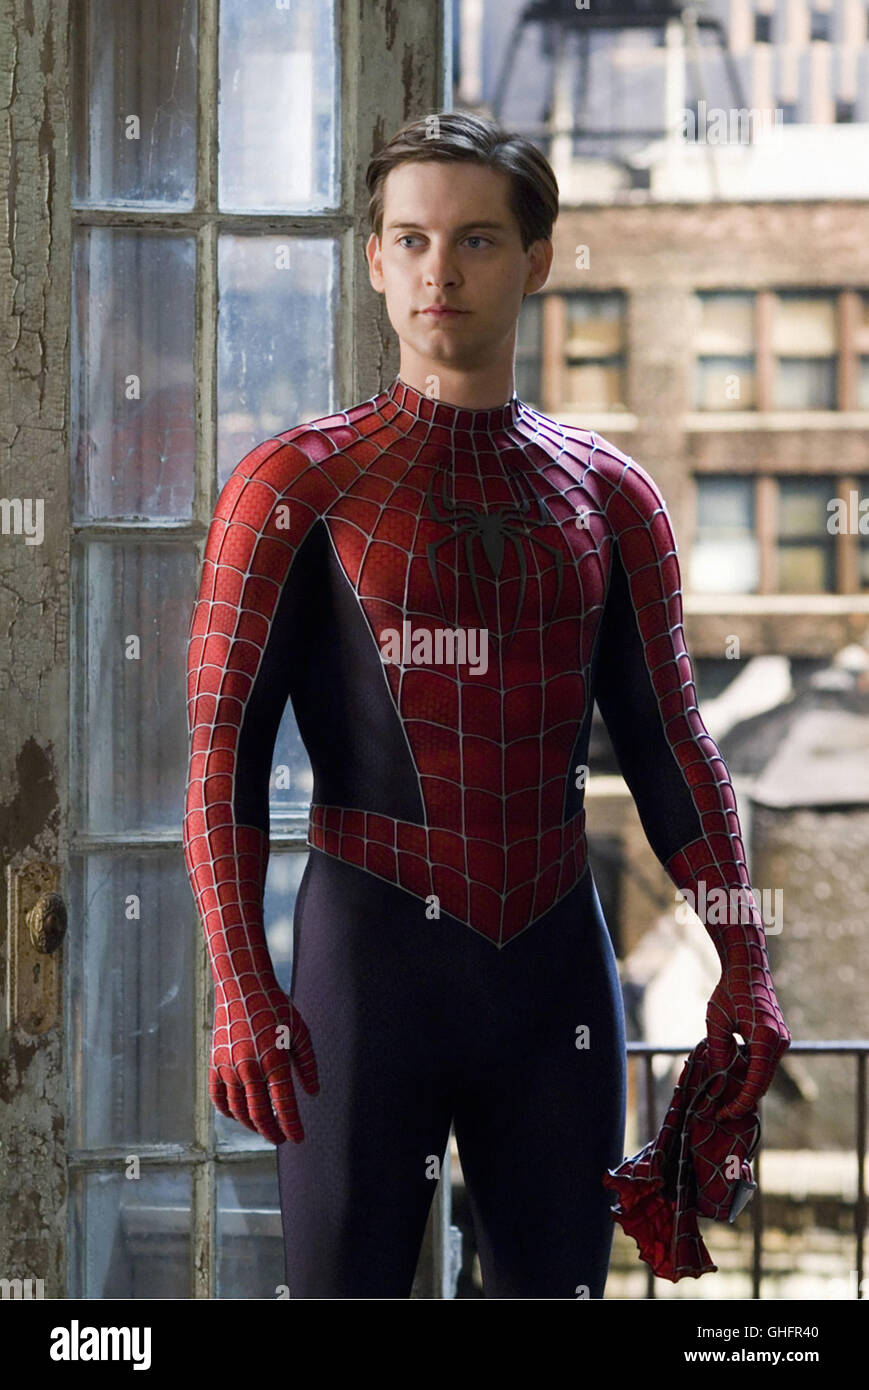 Spider-Man 3 / Peter Parker/Spiderman (Tobey Maguire) Regie: Sam Raimi aka. Spider-Man 3 Foto de stock